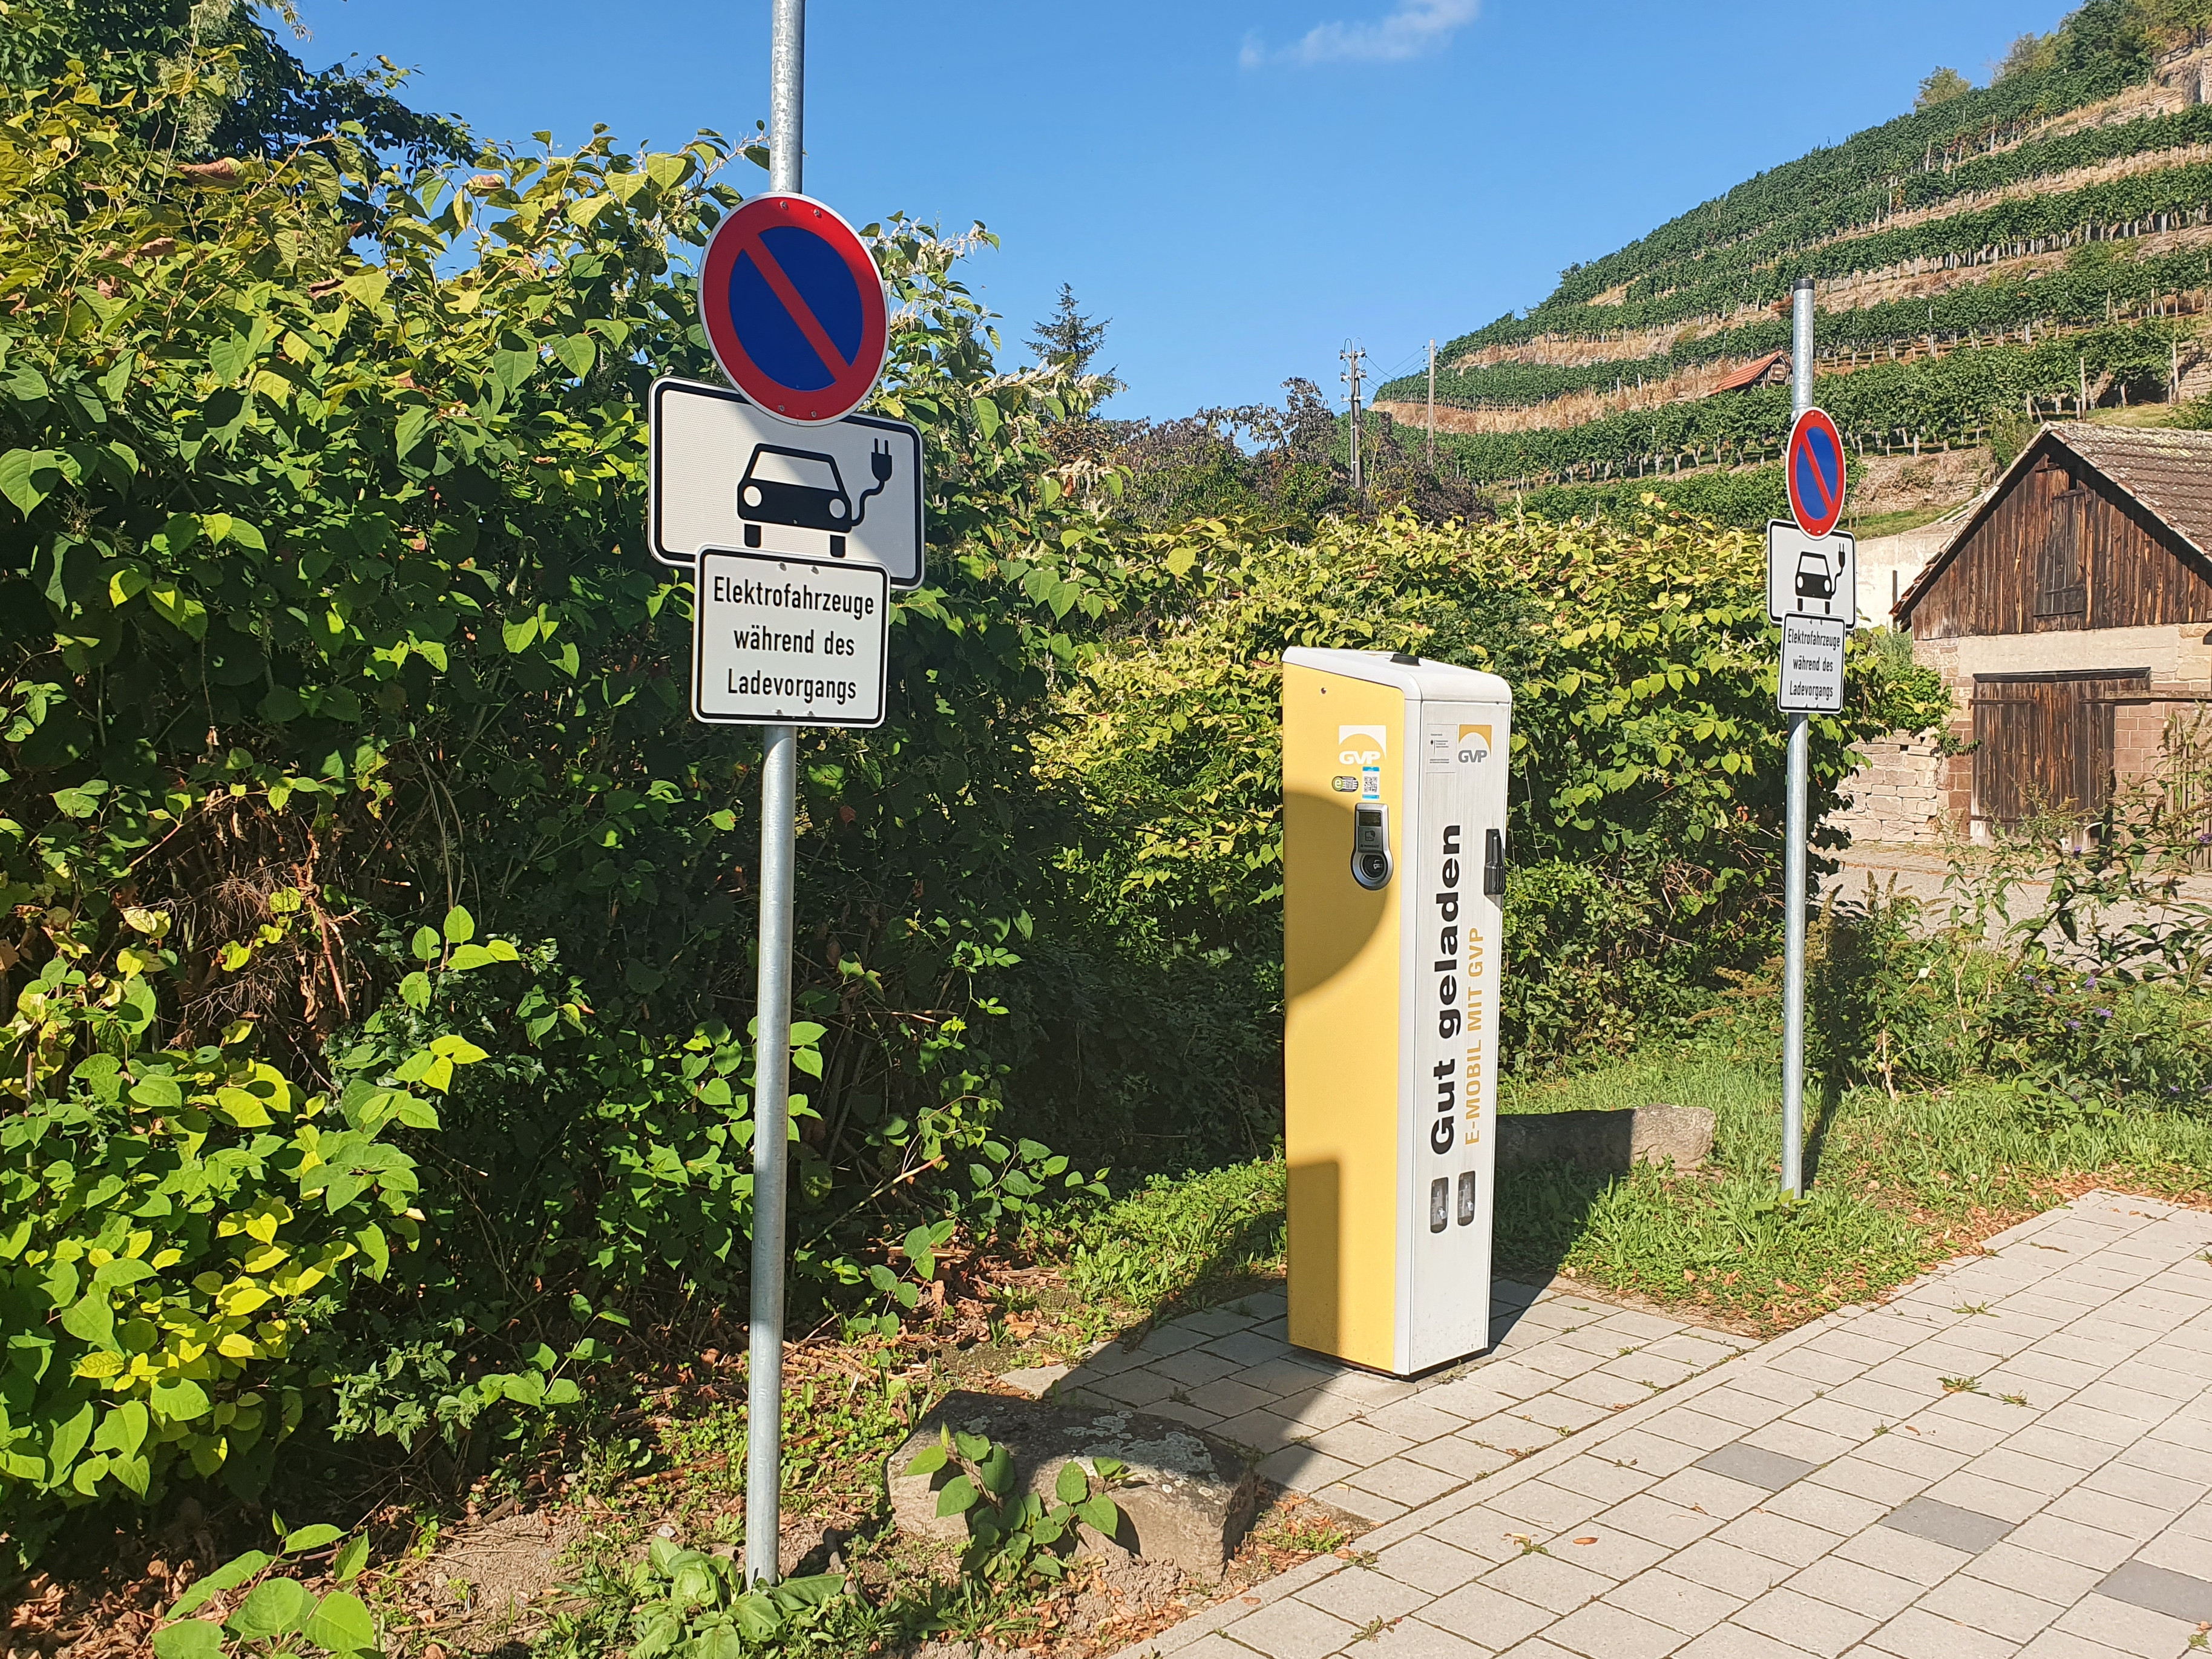 Ladesäule der GVP für 2 E-Autos am Kloster Maulbronn/Gartenstraße, im Hintergrund der Closterweinberg mit Schuppen